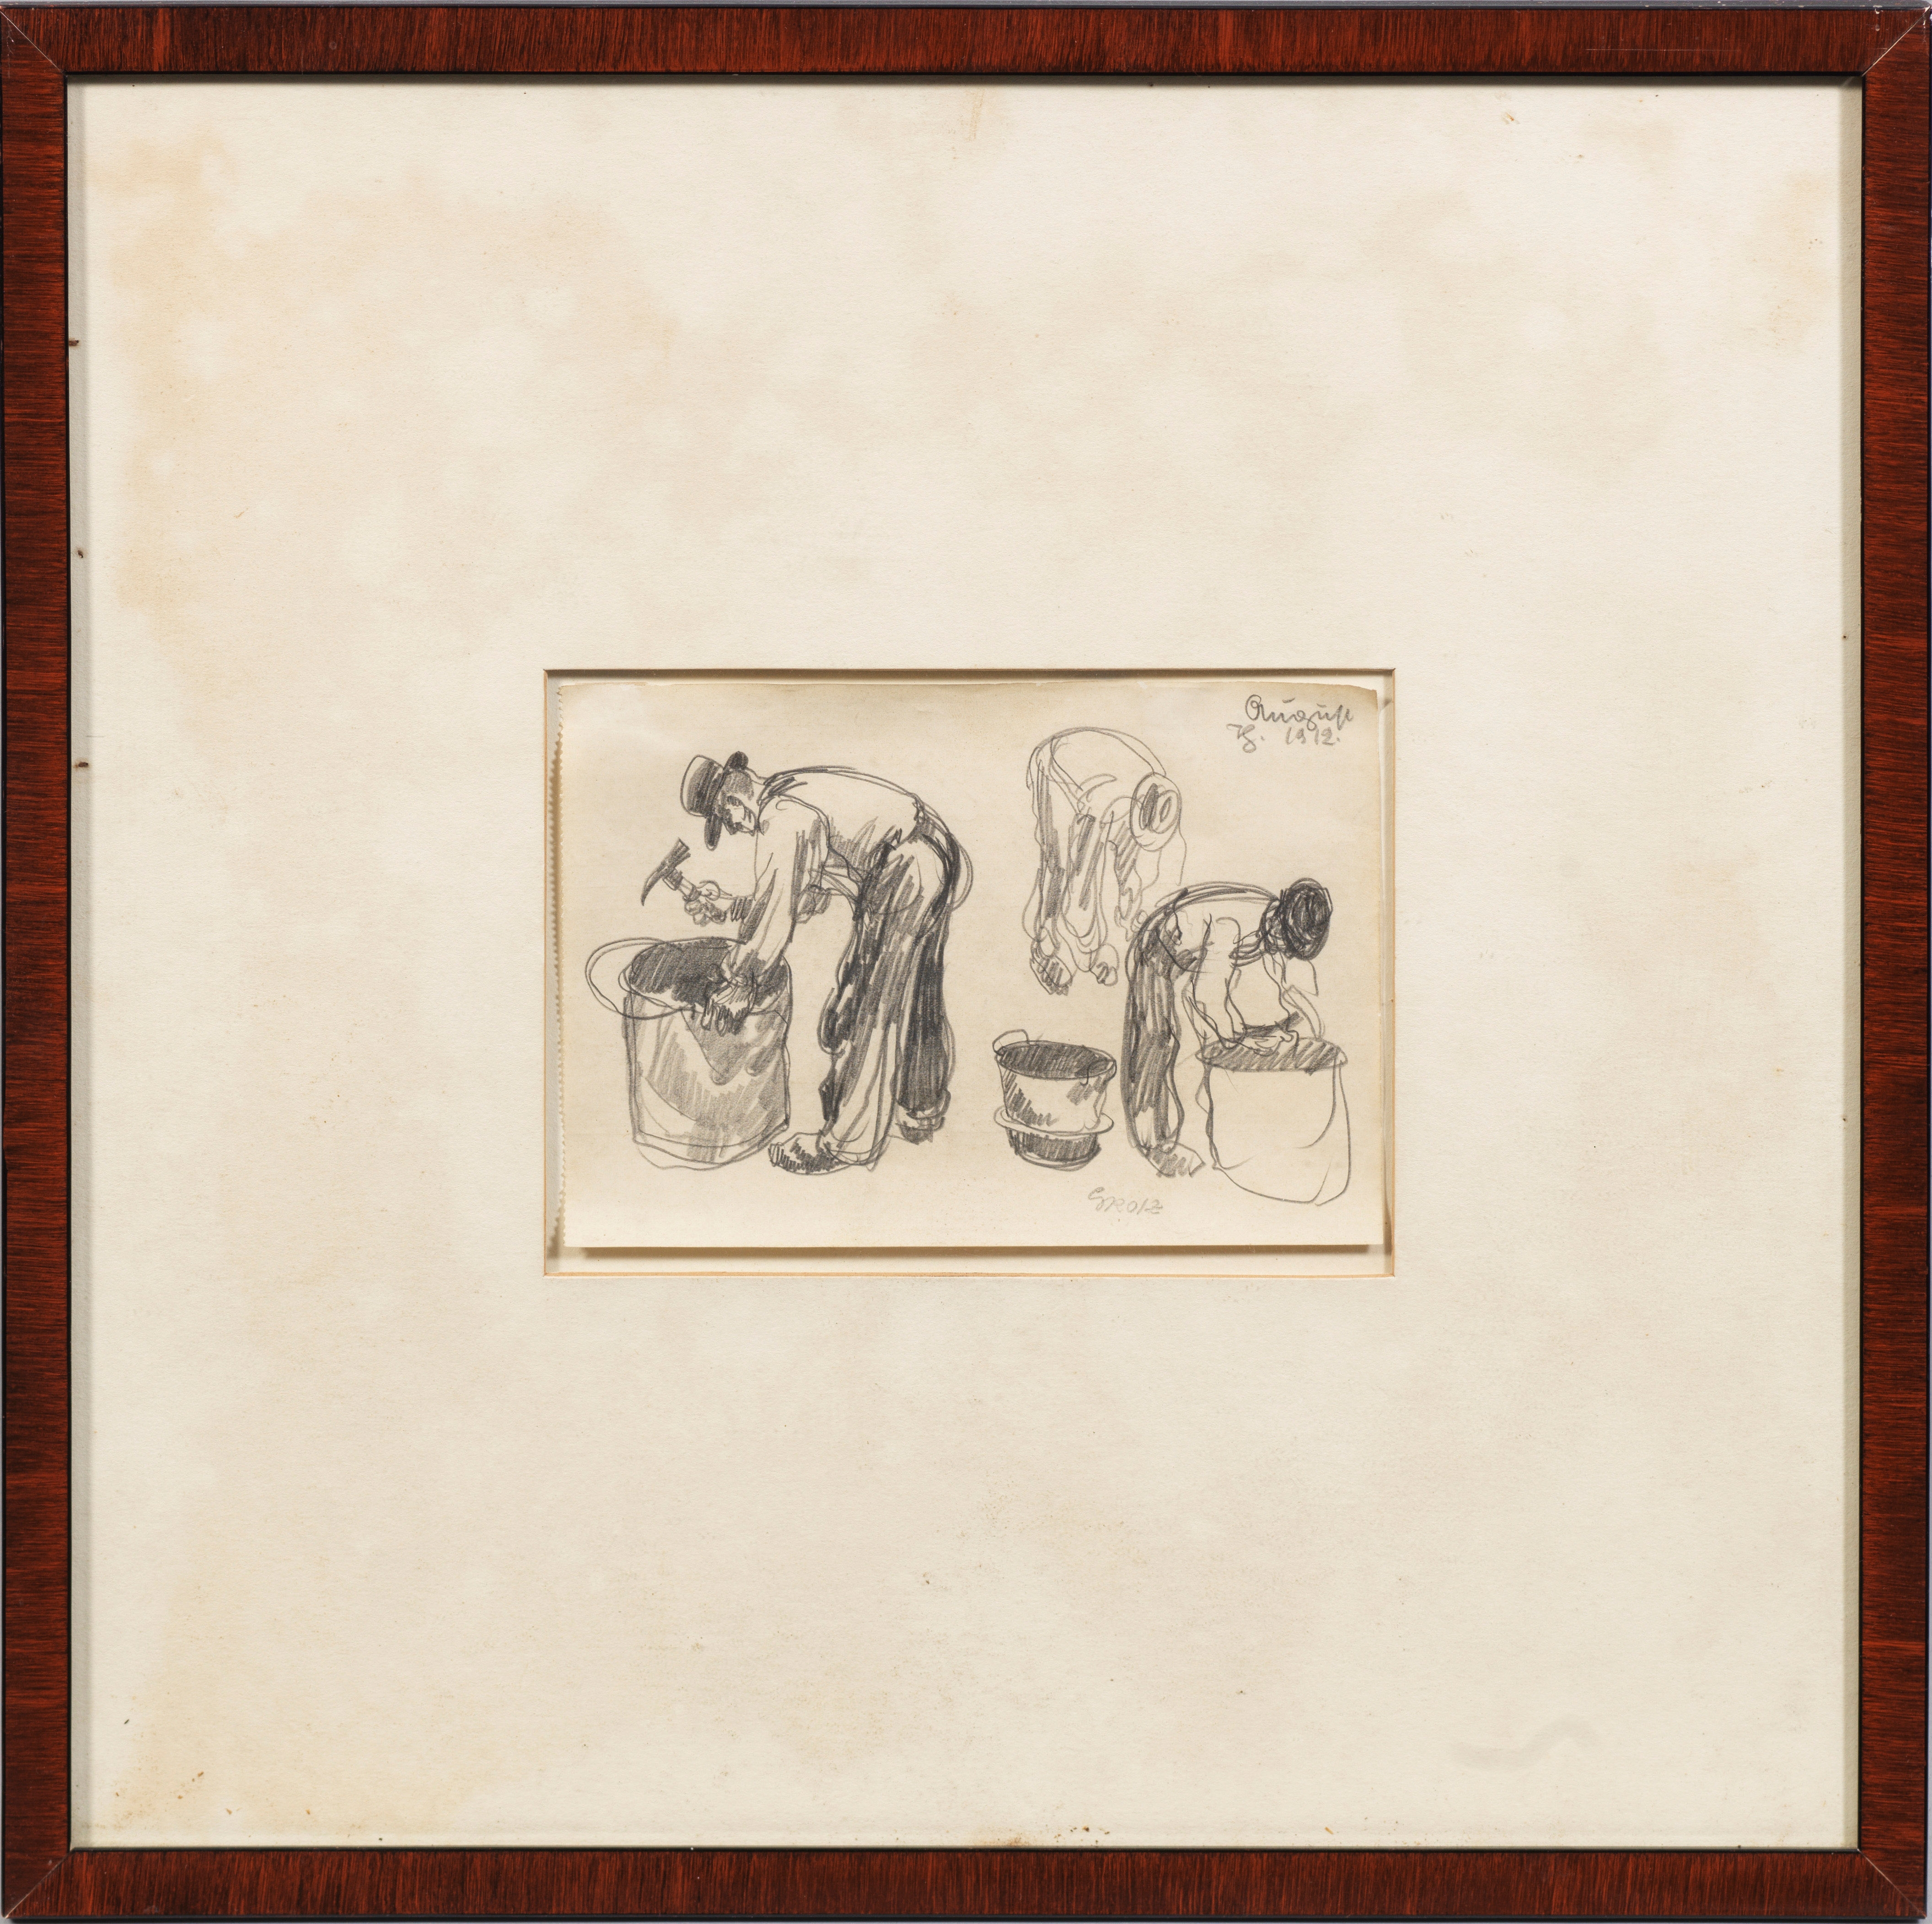 Artwork by George Grosz, Figurenstudie mit drei gebeugten Arbeitern, Made of Pencil on paper